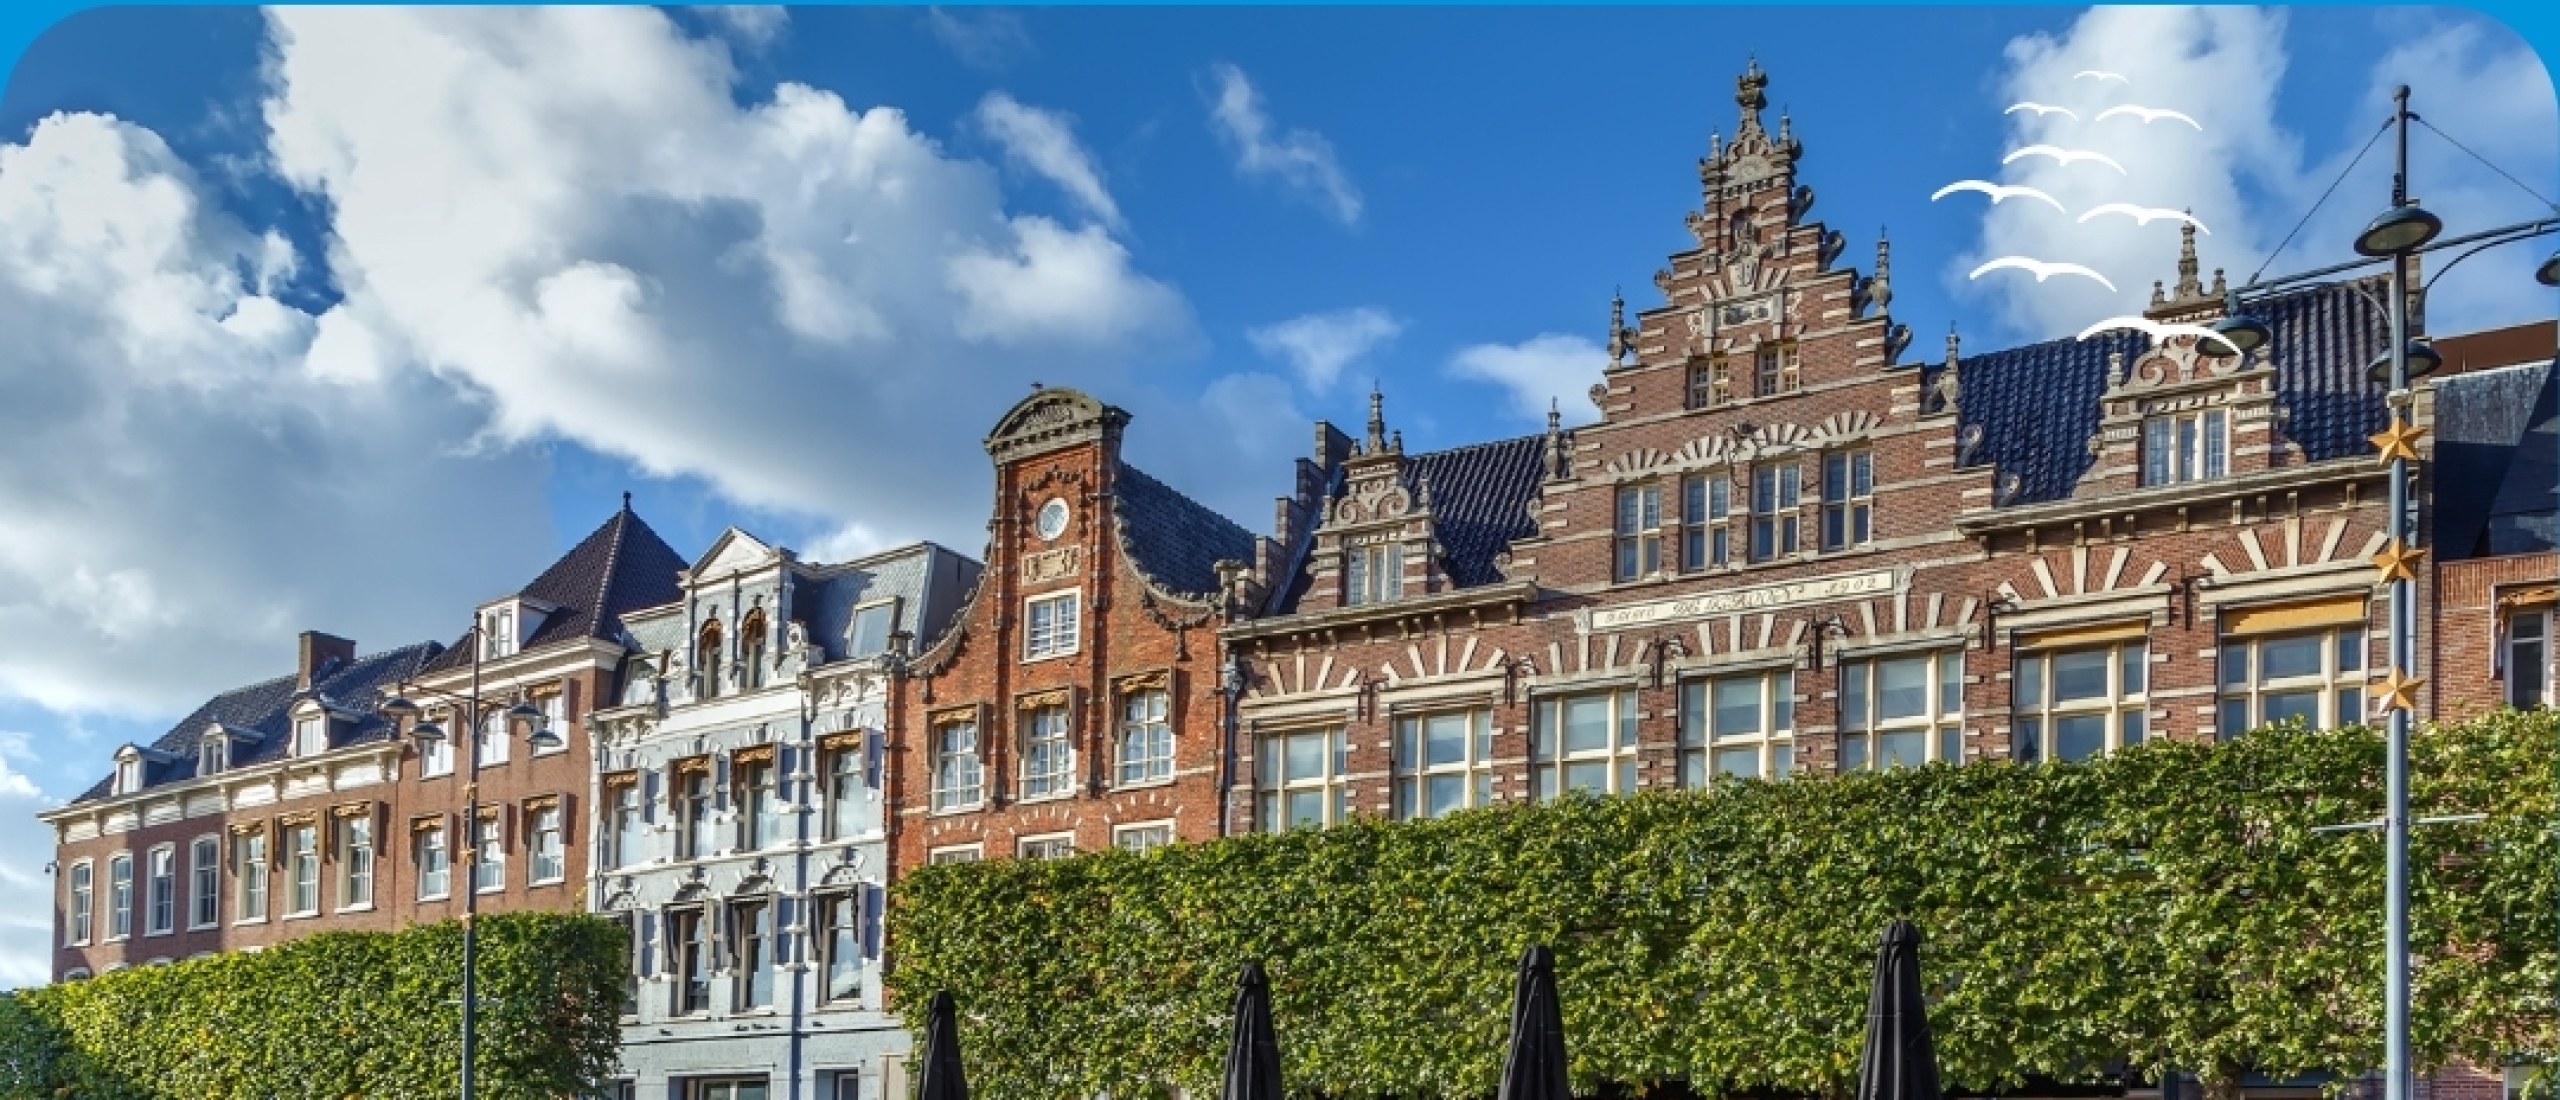 Locas verwerft prestigieuze opdracht voor transformatieproject in Haarlem  De Brinck, 100 high-end appartementen